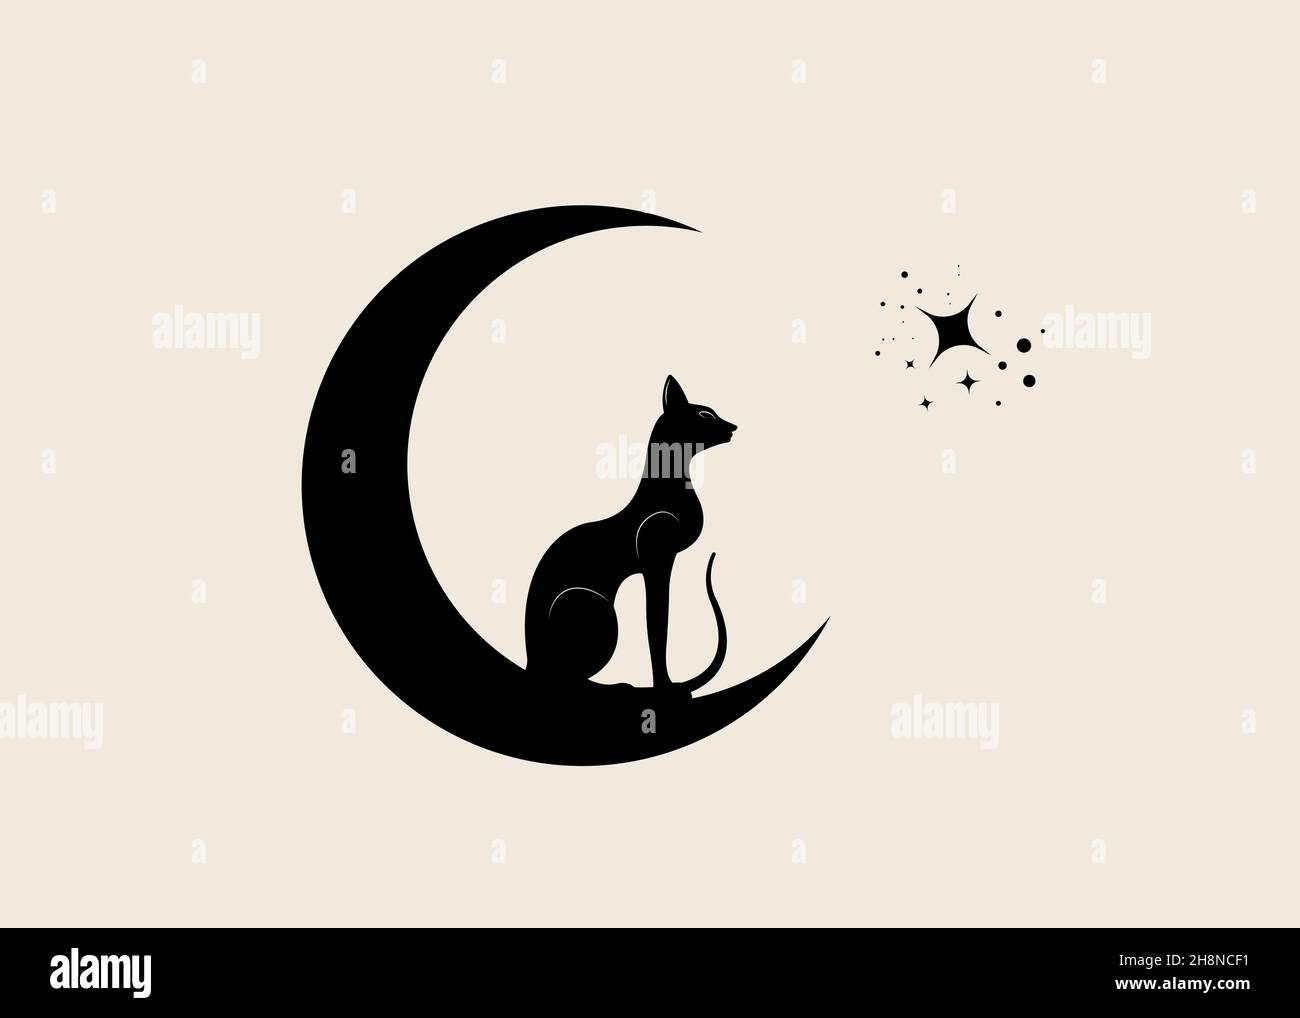 Gatto nero egiziano seduto sulla luna crescente, guarda le stelle. Logo Alchemy Wicca simbolo, stile boho, tatuaggio icona. Illustrazione vettoriale isolata Illustrazione Vettoriale